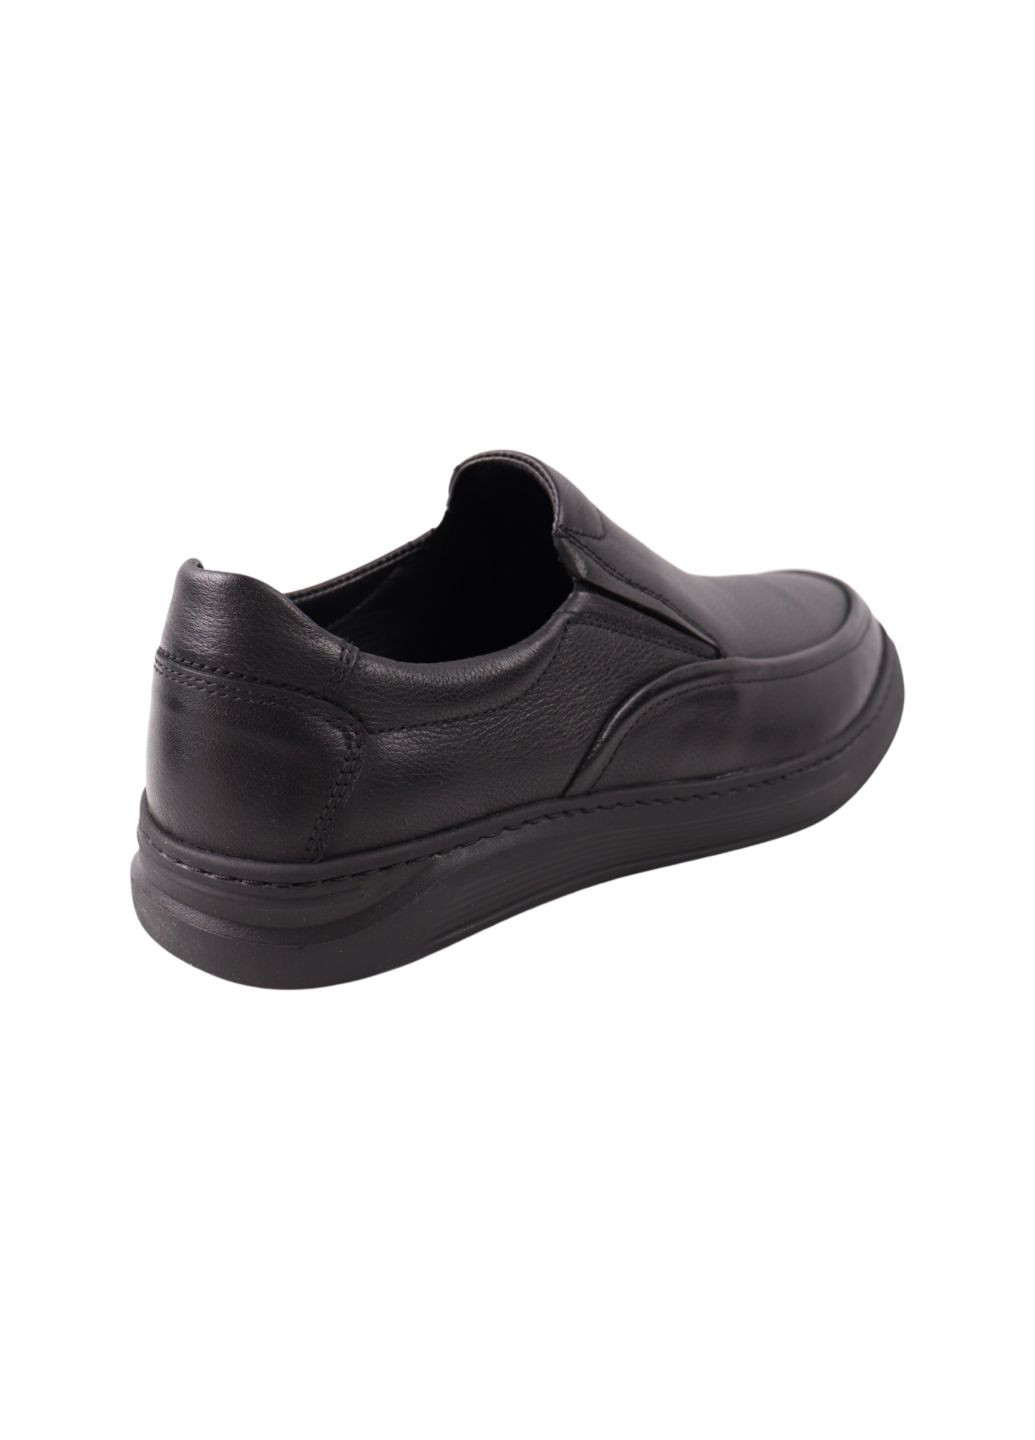 Черные туфли мужские черные натуральная кожа Detta